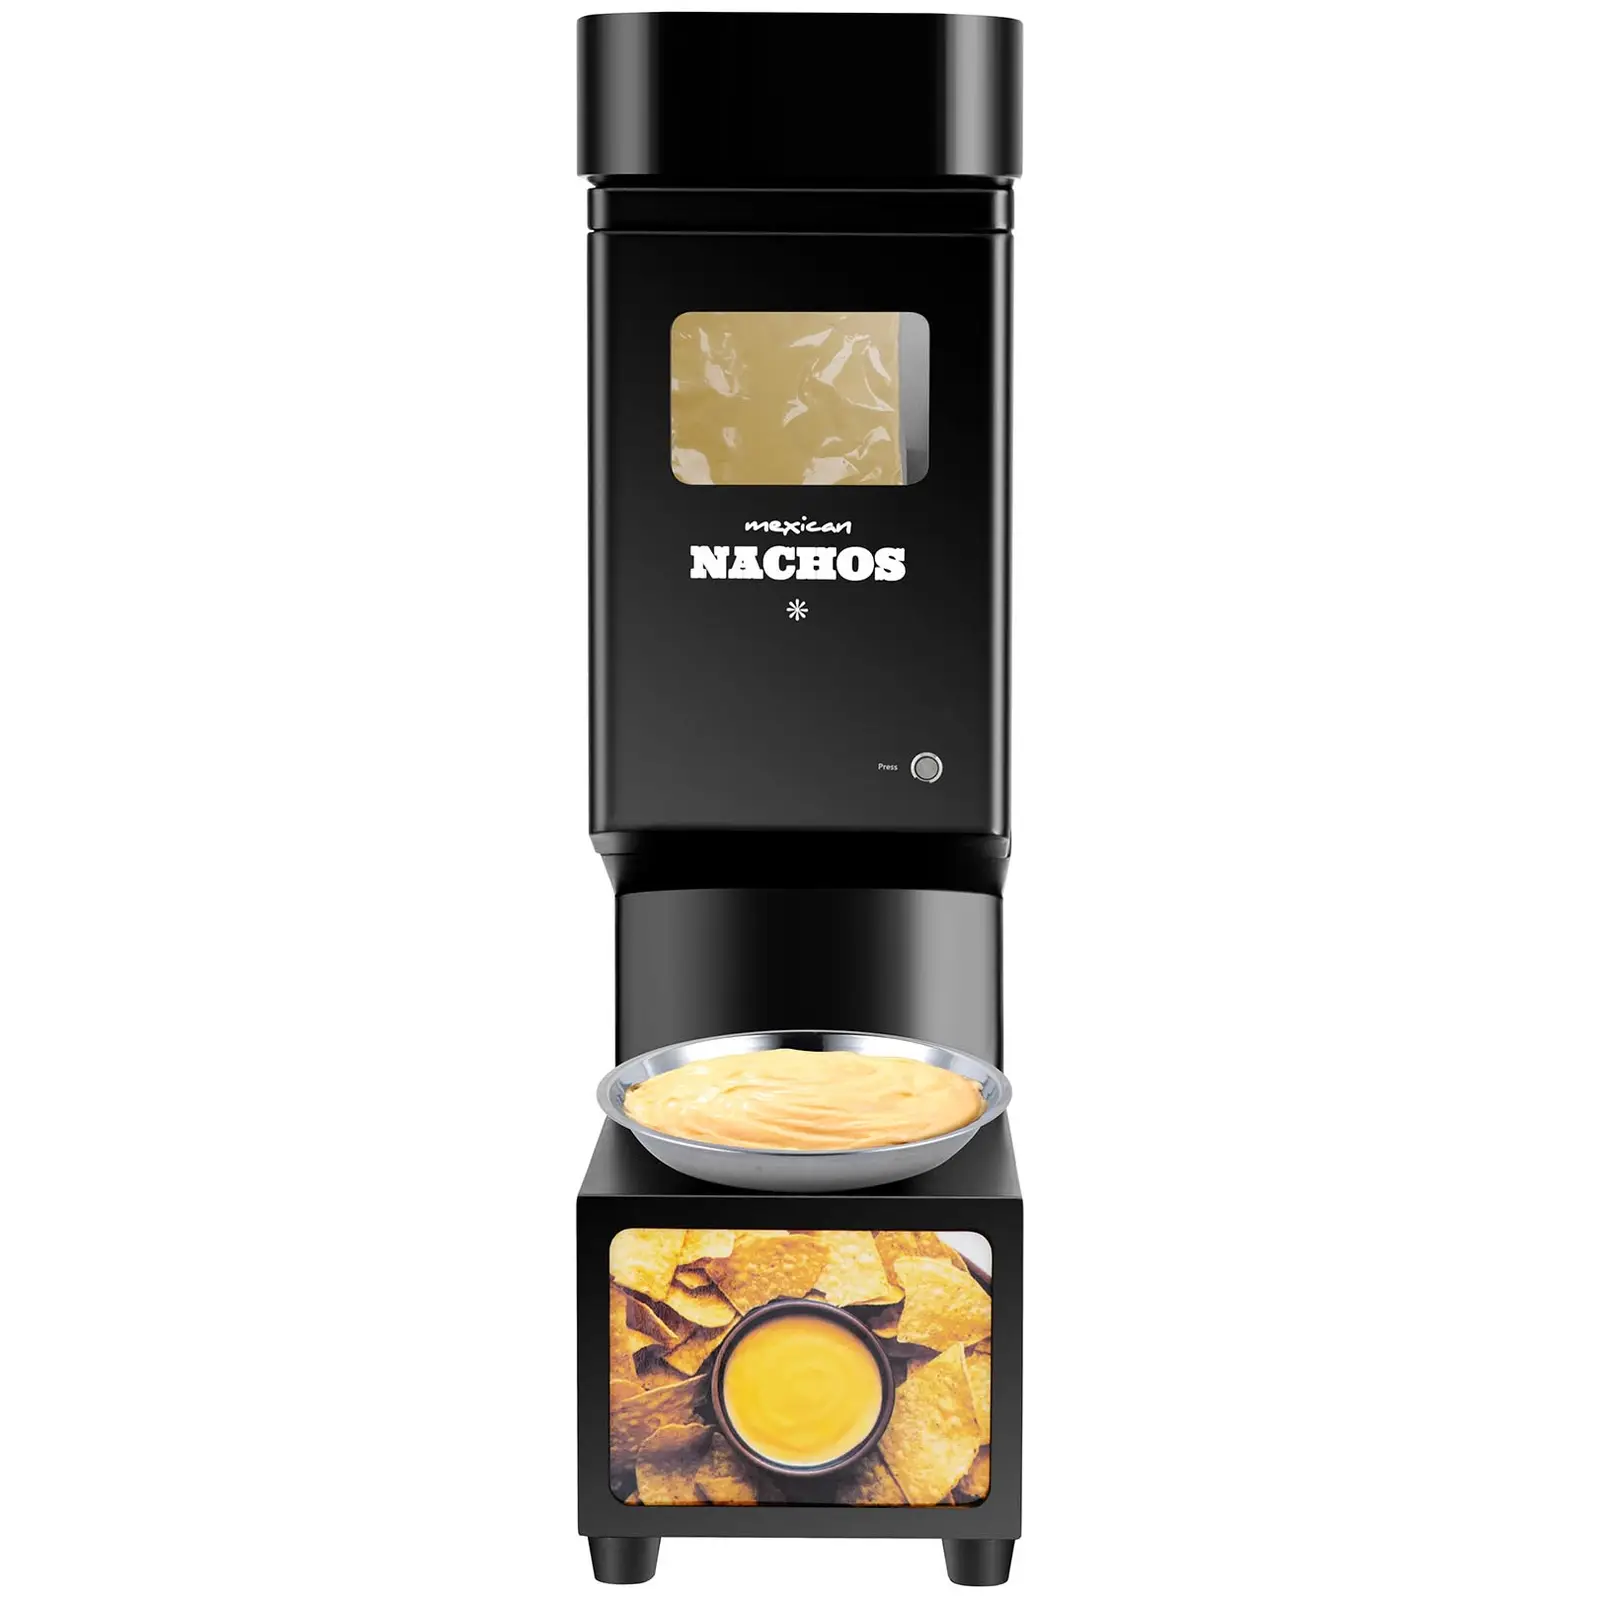 Seconda Mano Dispenser salsa per nachos a formaggio - Design retrò - 4,8 l - 55 - 80 °C - Nero - Royal Catering